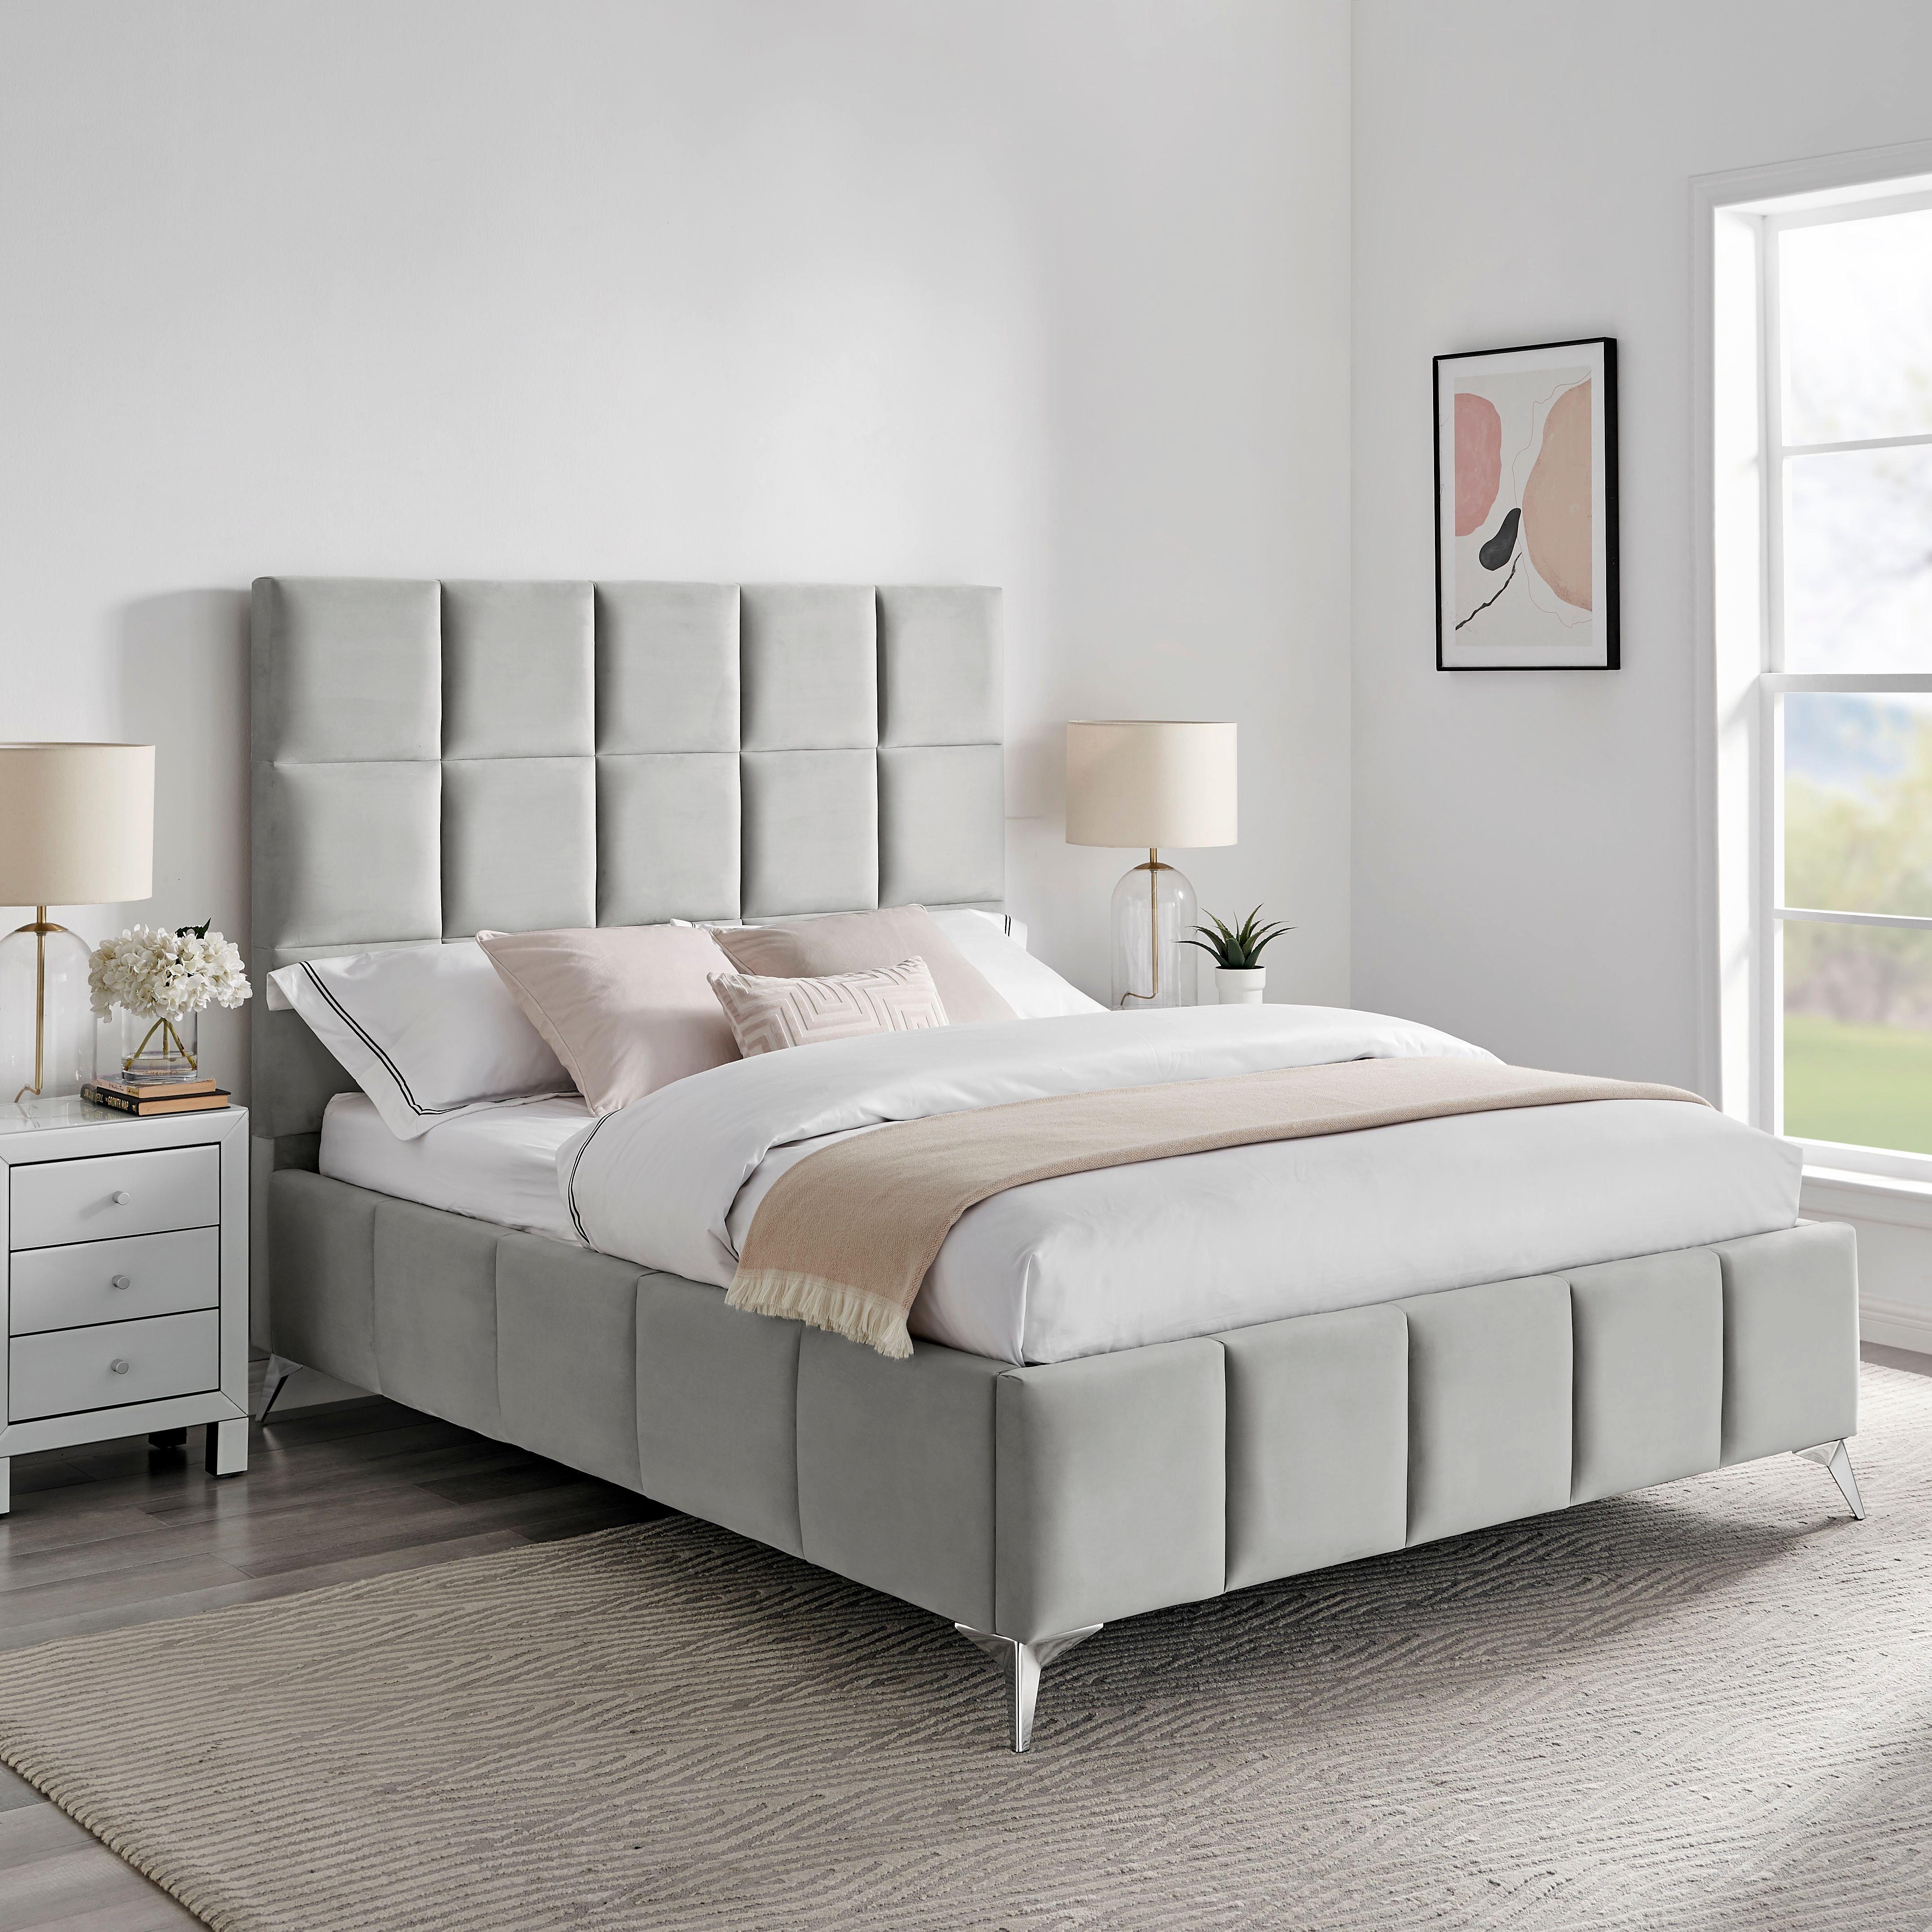 Imogen Light Grey Velvet Bed Frame Ottoman Storage Gas Lift Square Panel Design